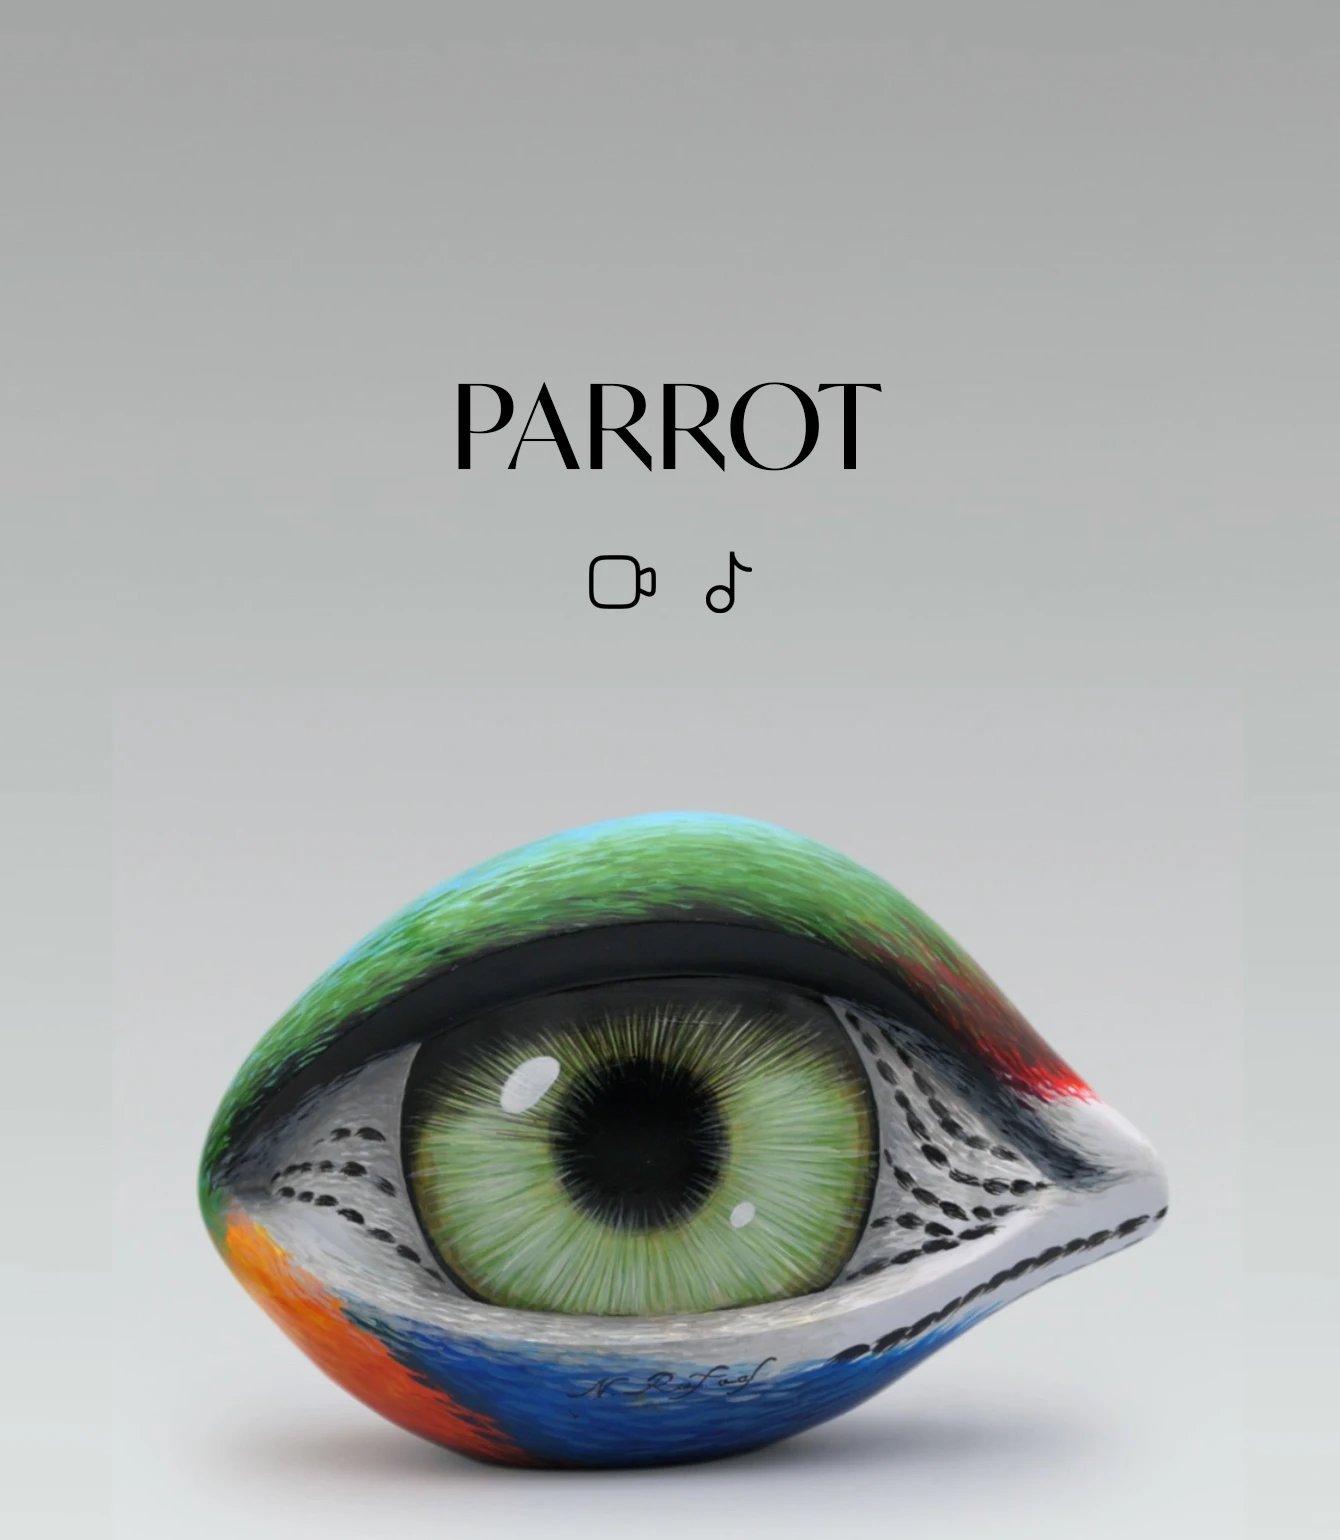 21148-parrot-17218172551576.jpg